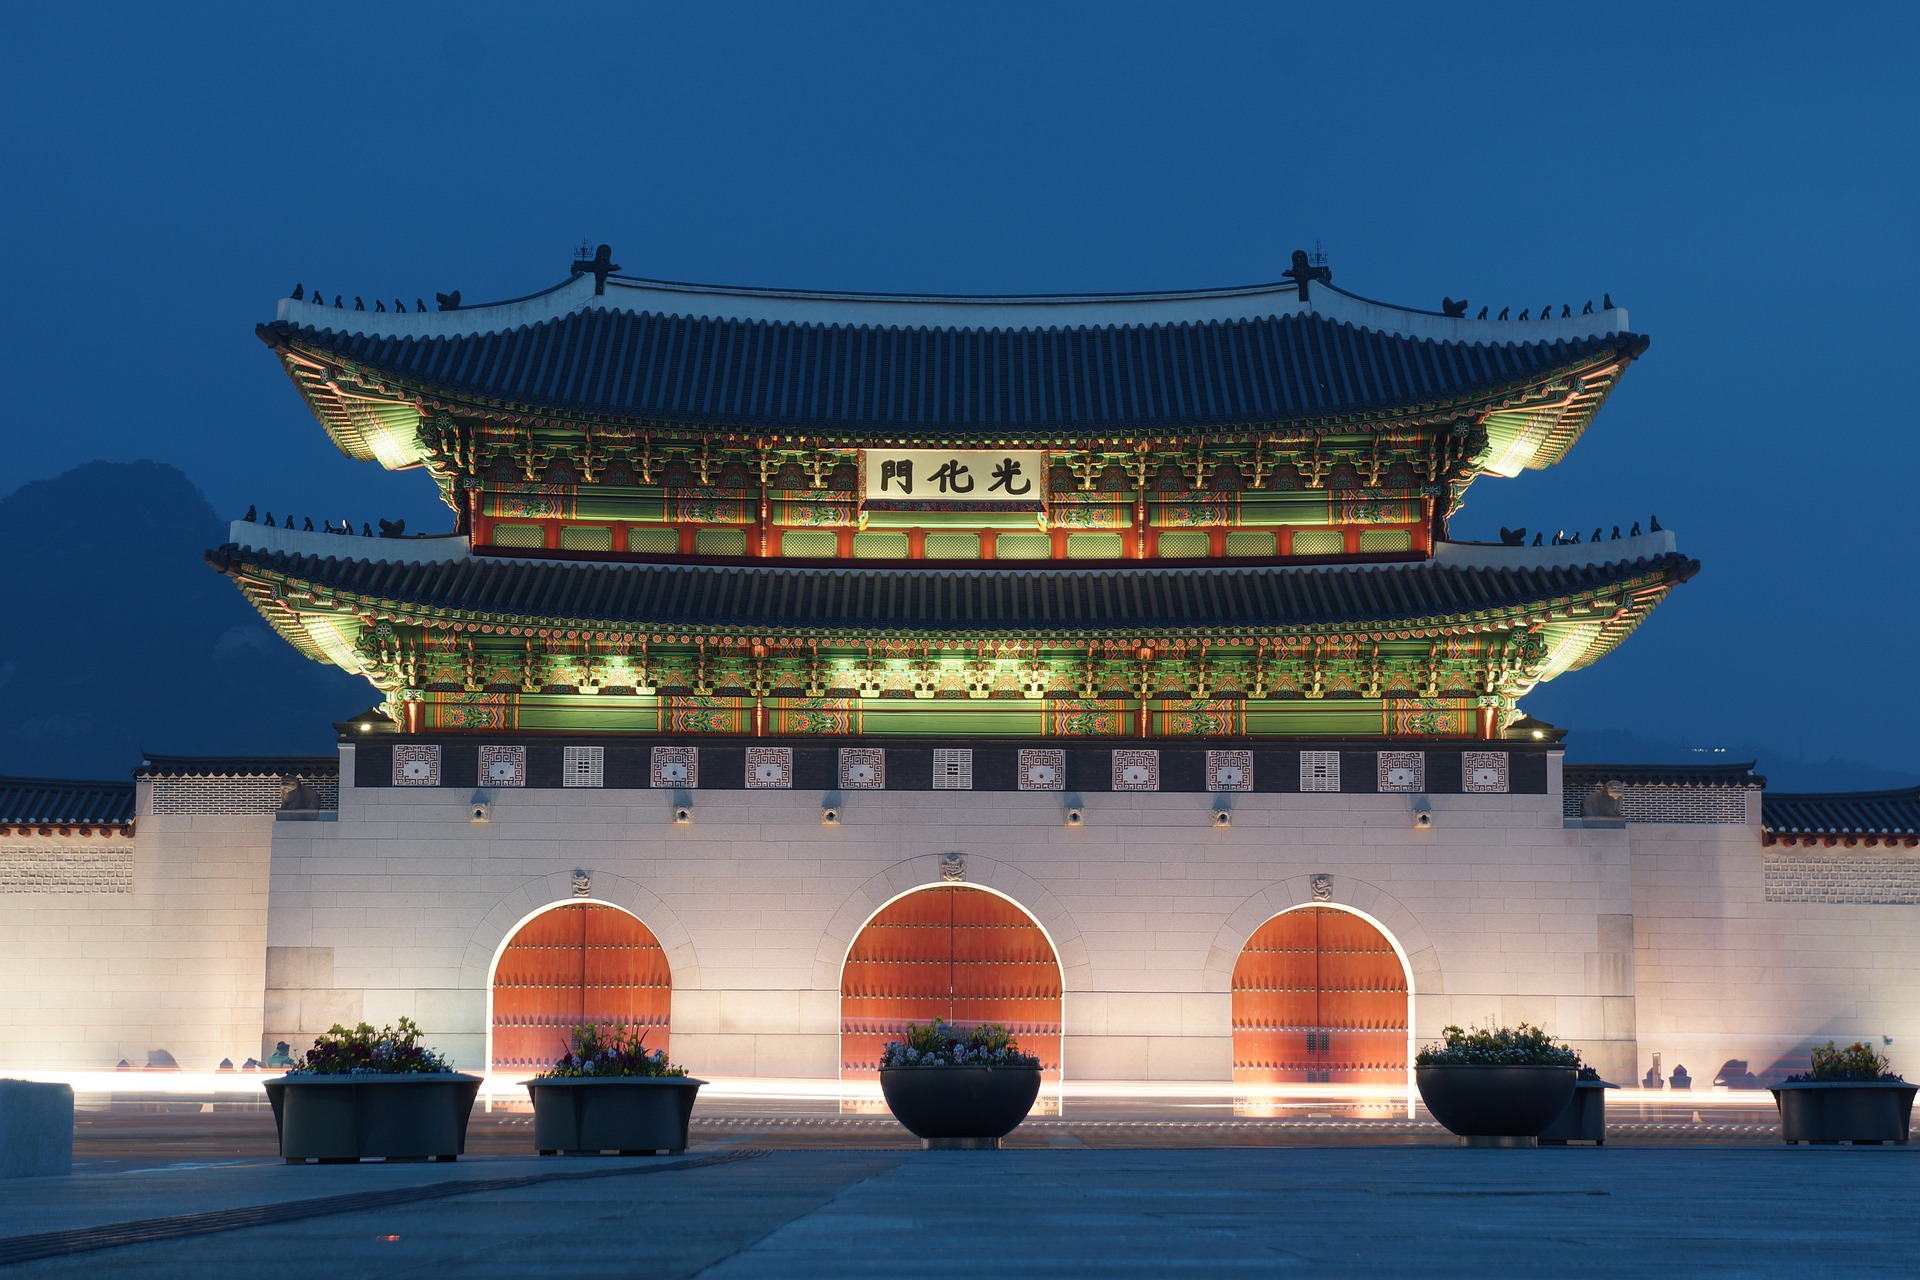 Seoul palace at night.